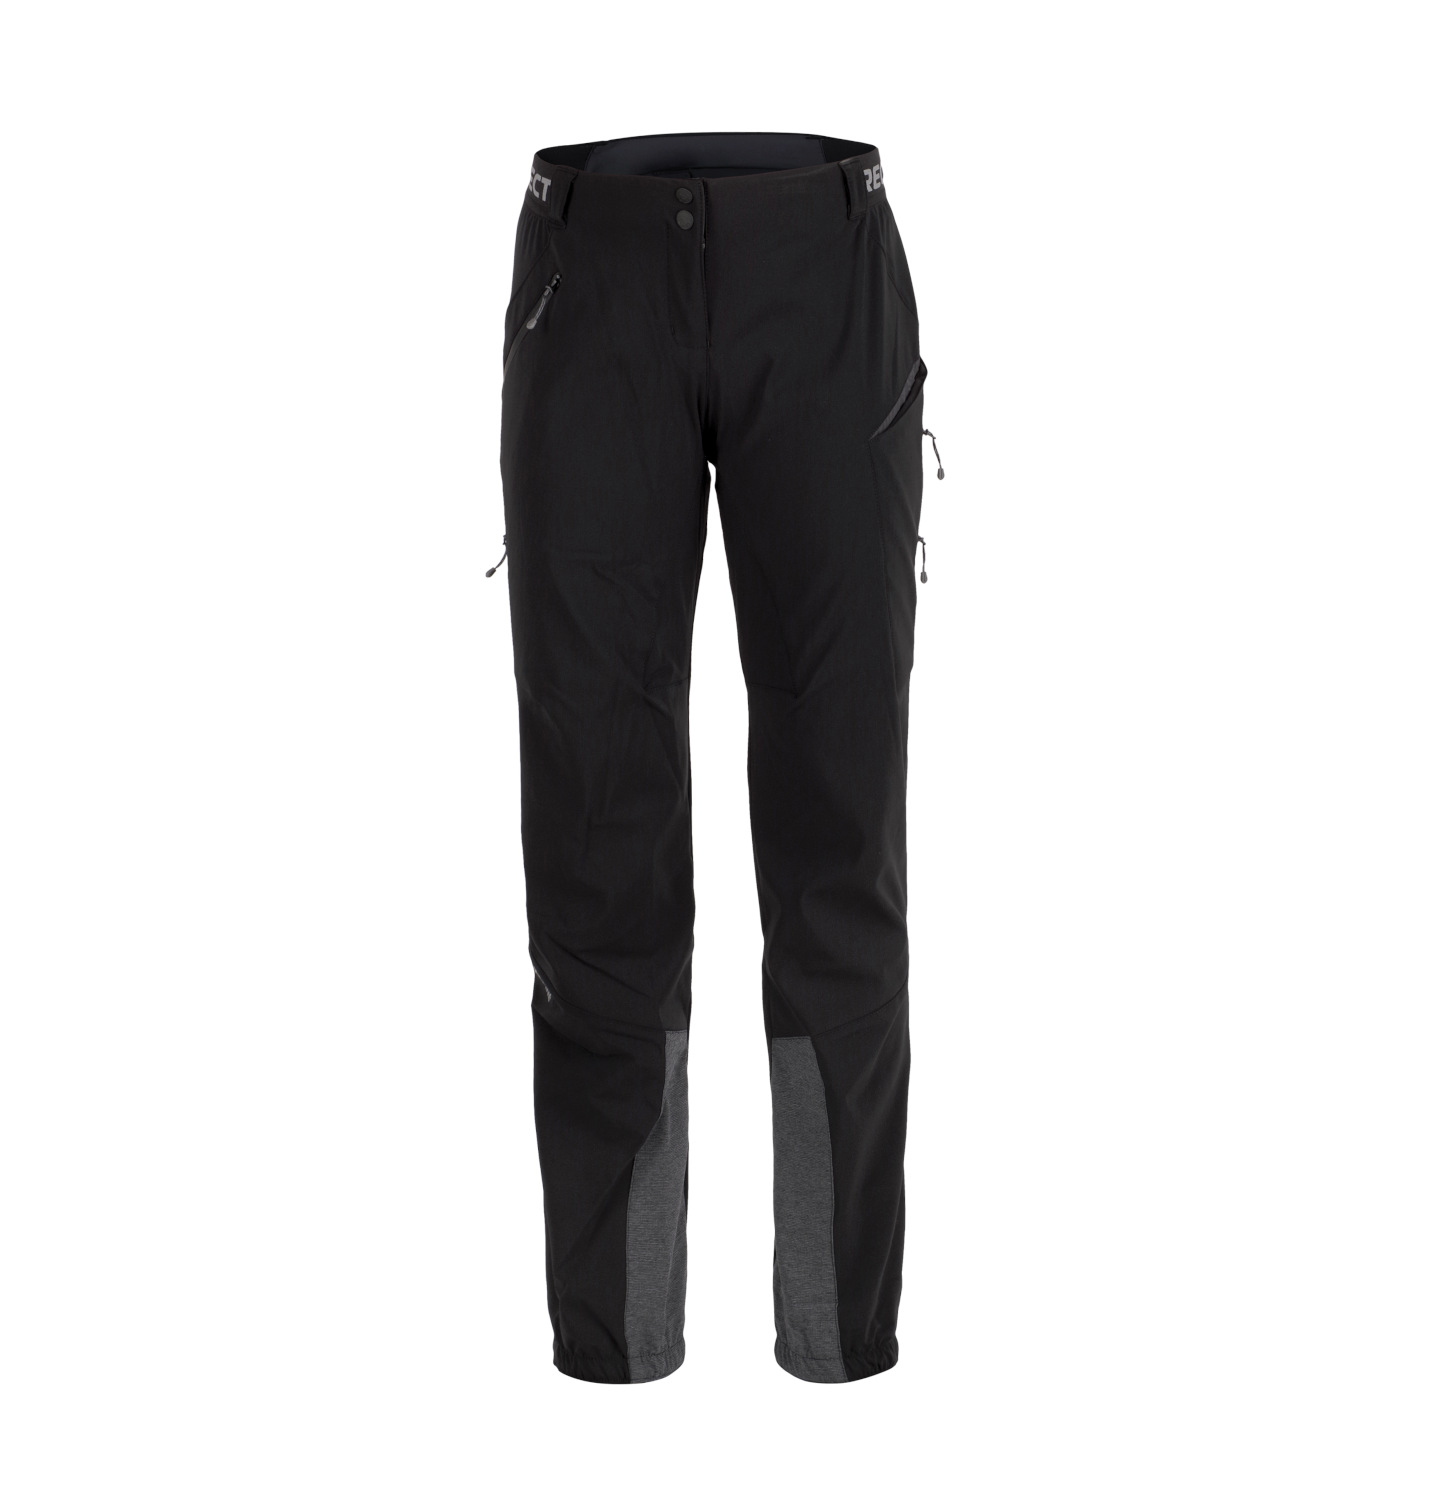 Dámské zimní funkční kalhoty Direct Alpine REBEL LADY 1.0 black XL